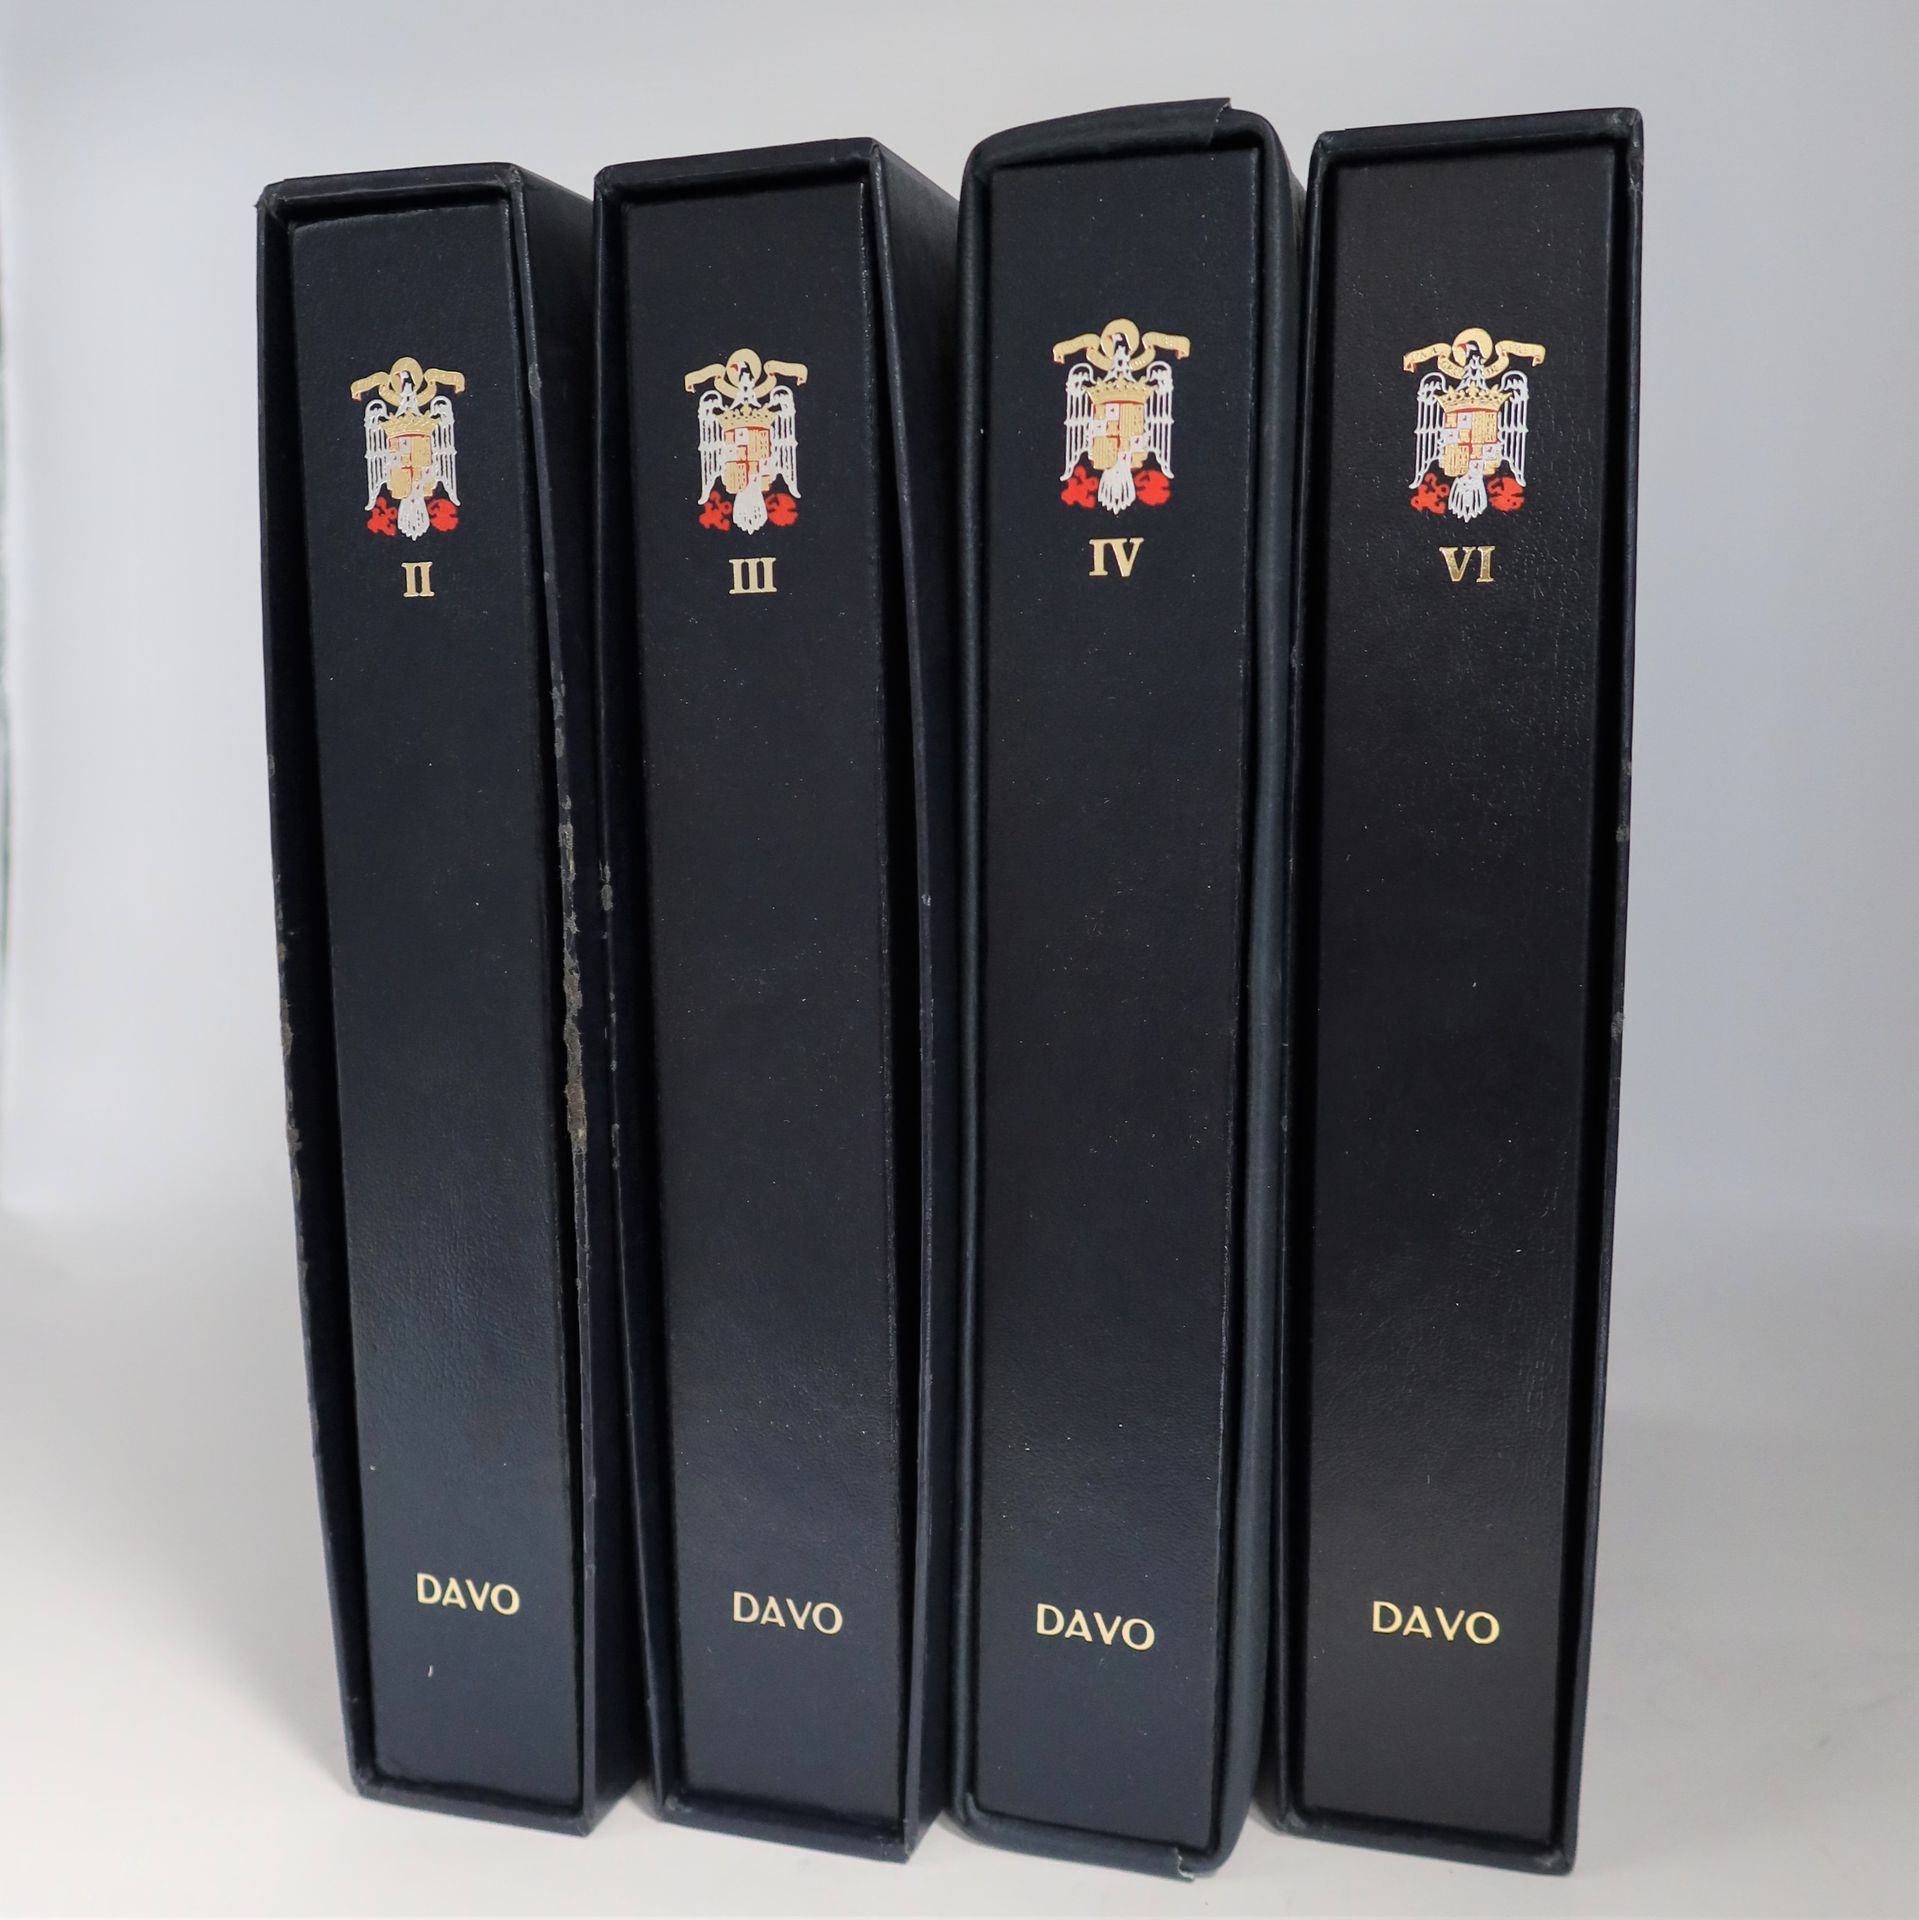 Null [SPAGNA]
Bellissima serie in 4 volumi della Spagna quasi completa dal 1945 &hellip;